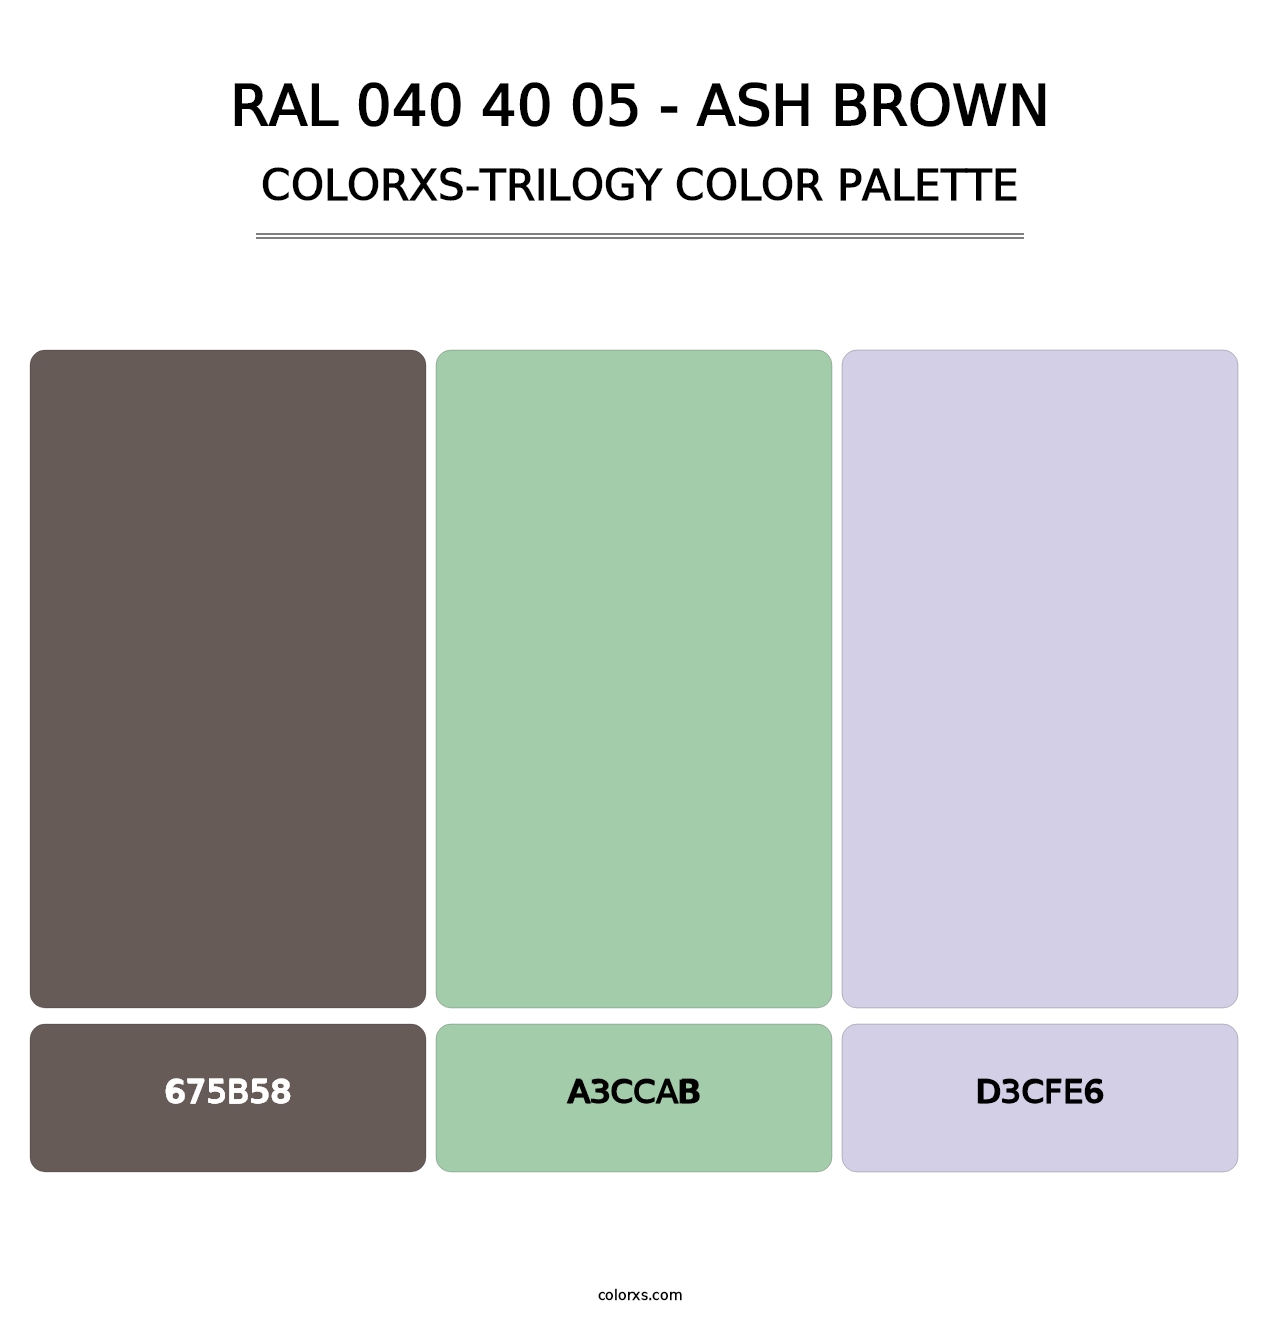 RAL 040 40 05 - Ash Brown - Colorxs Trilogy Palette